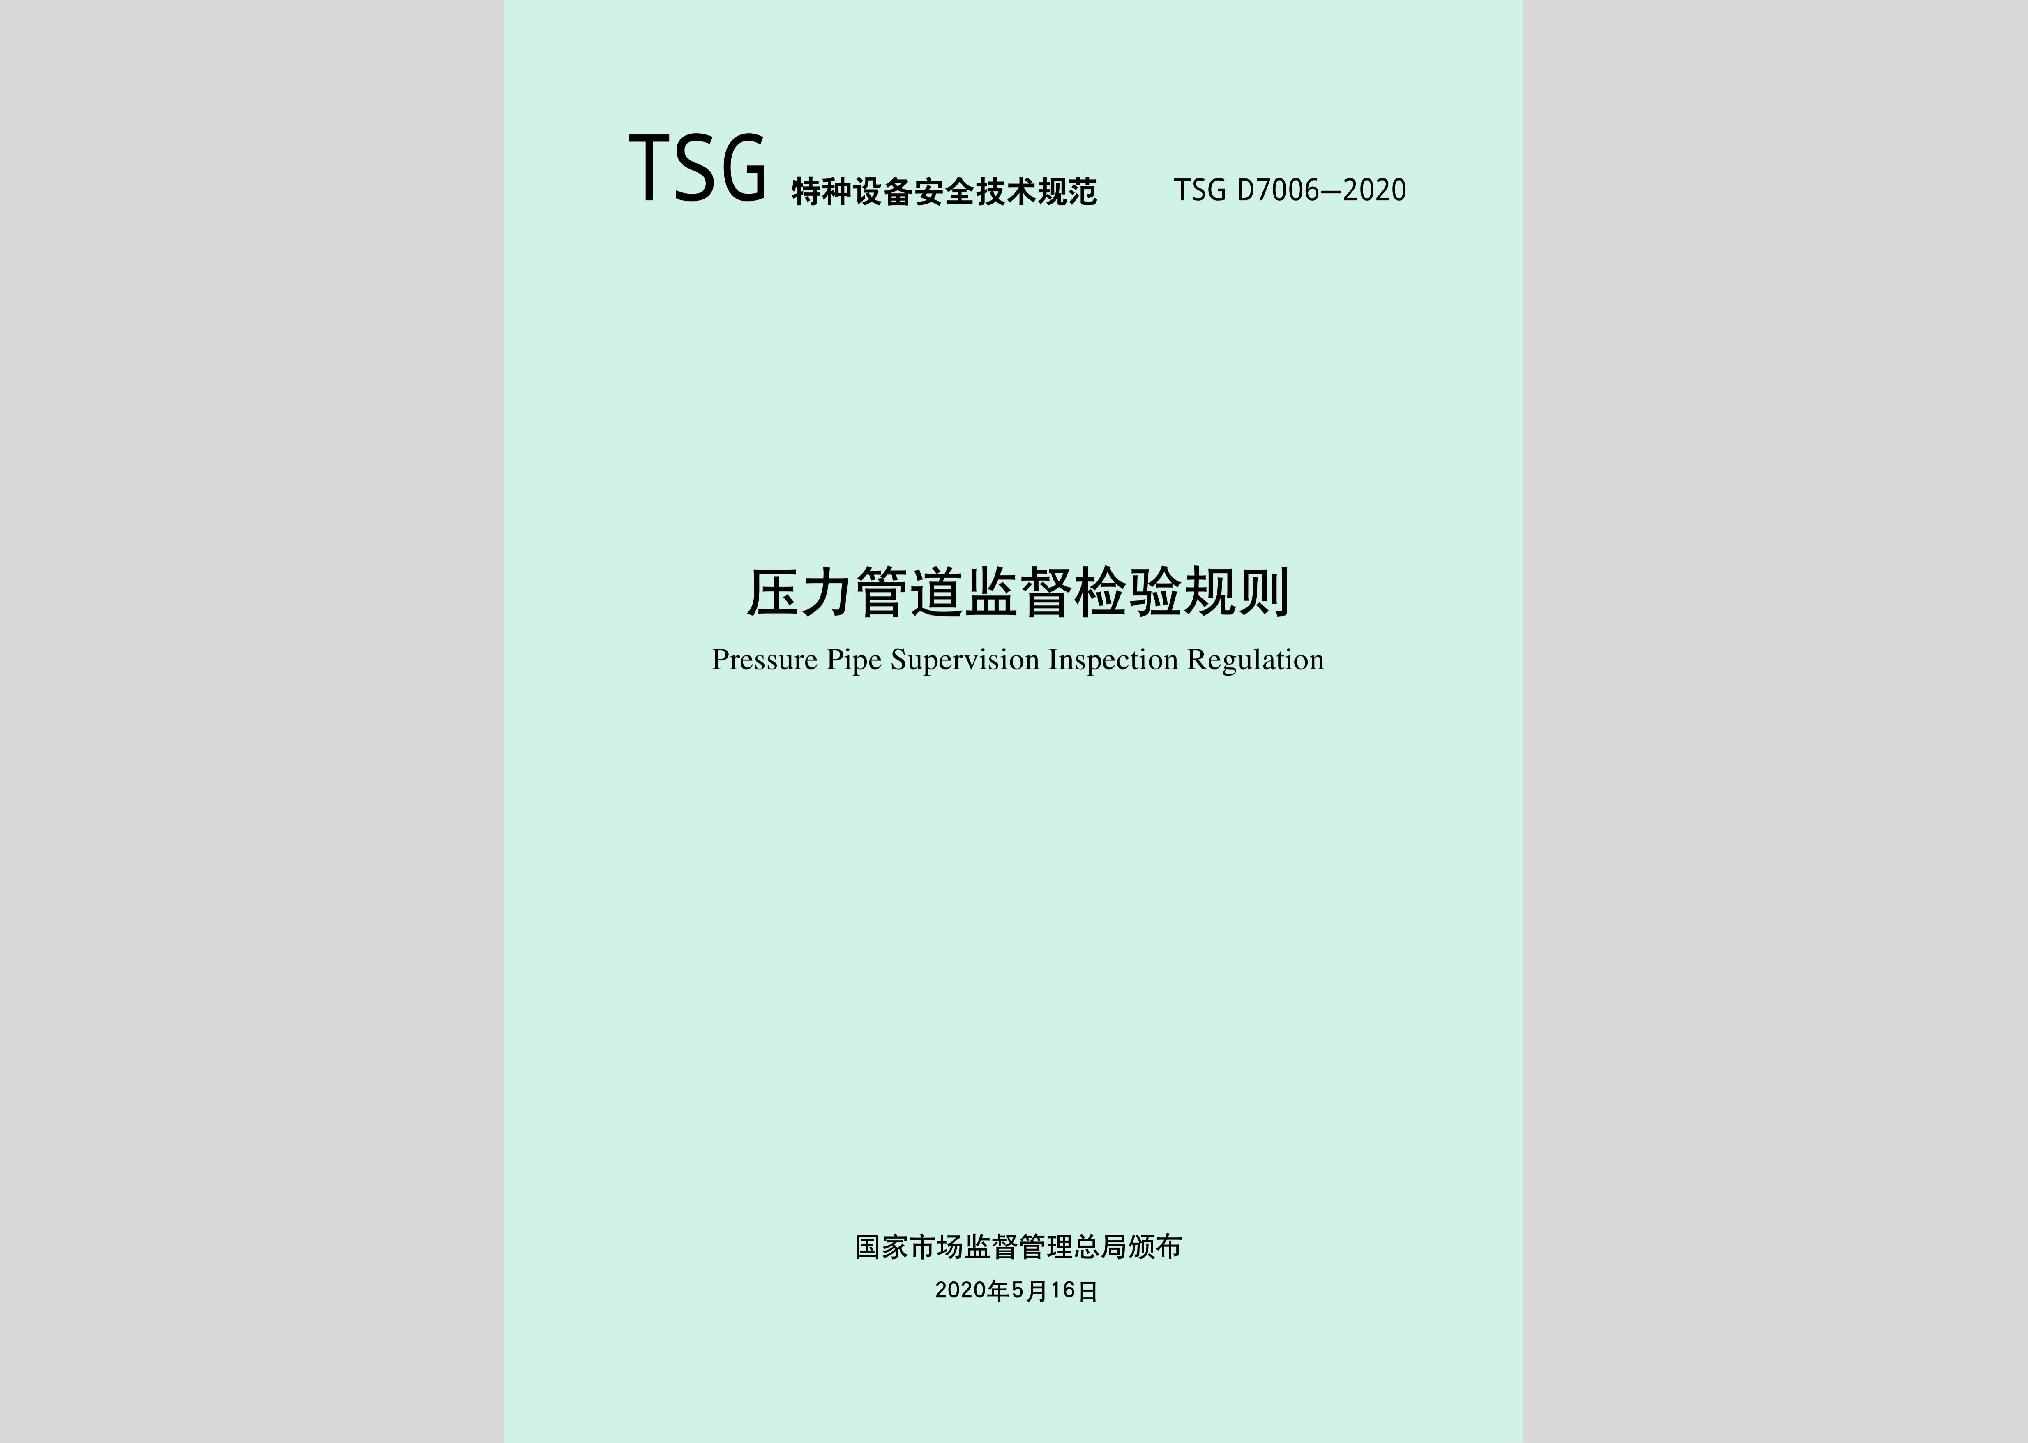 TSGD7006-2020：压力管道监督检验规则